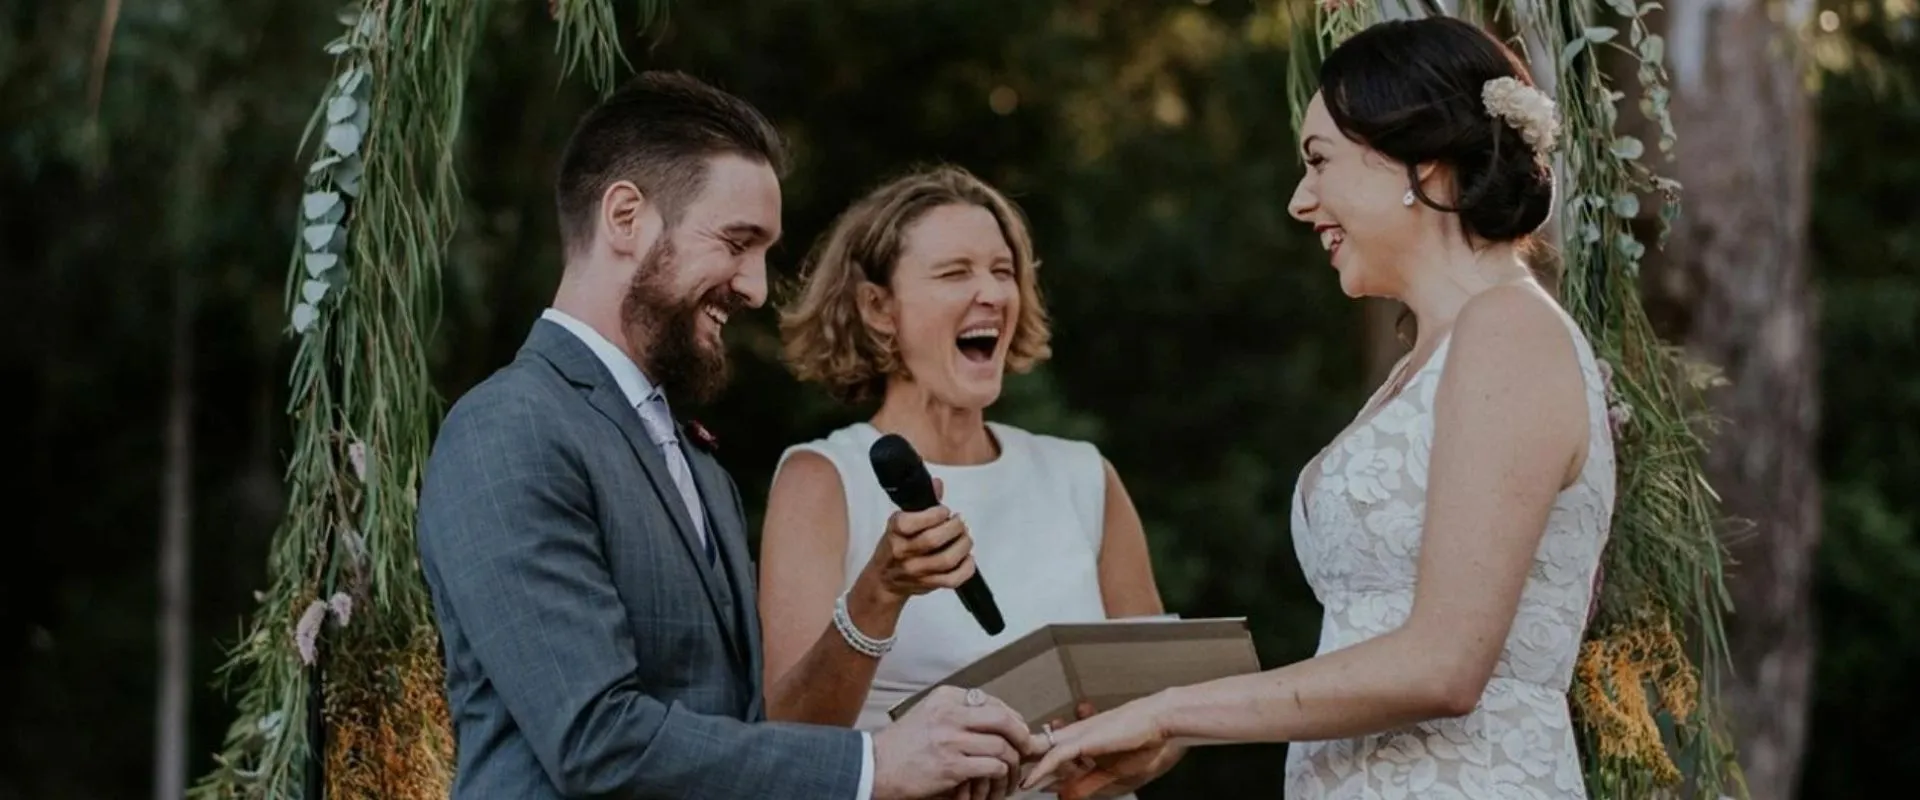 Meggan Brummer Sydney Marriage Celebrant Pricing